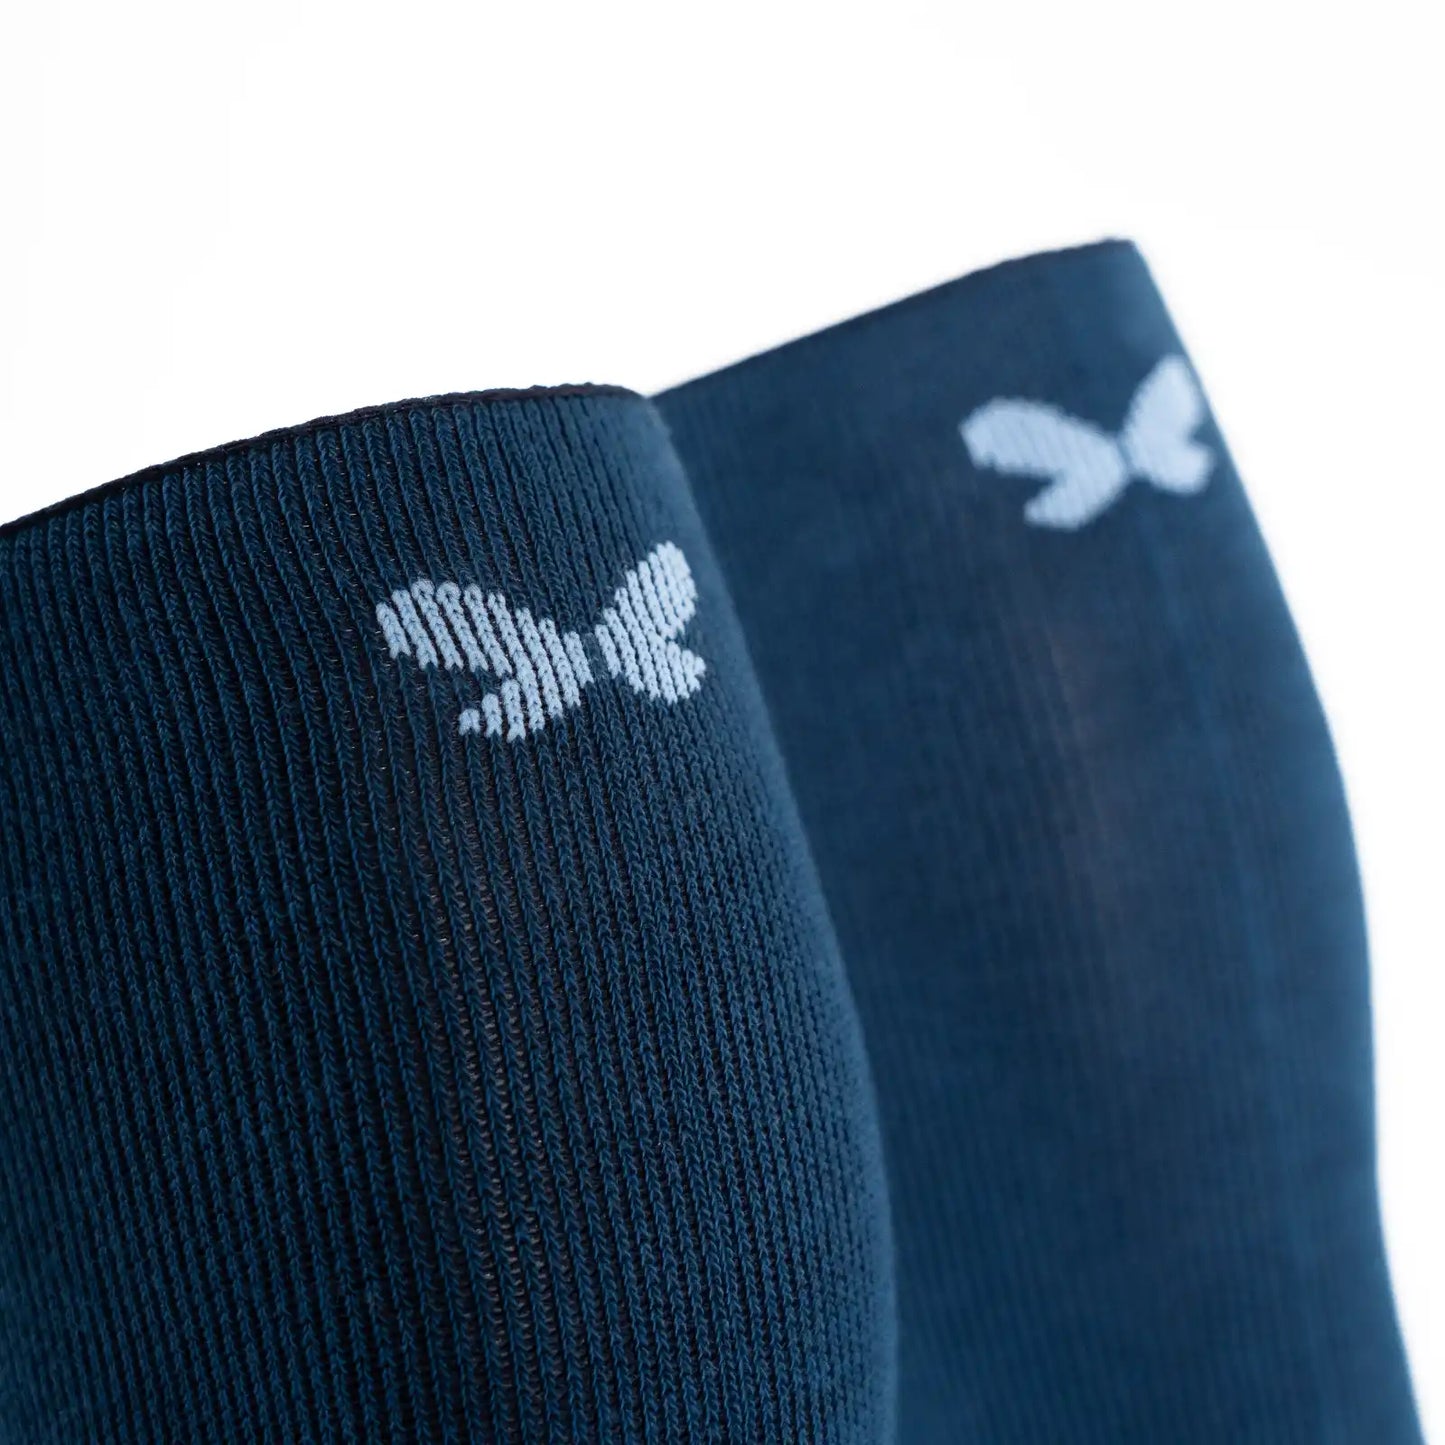 Calcetines con compresión de algodón, altos, color color azul oscuro para hombre y mujer